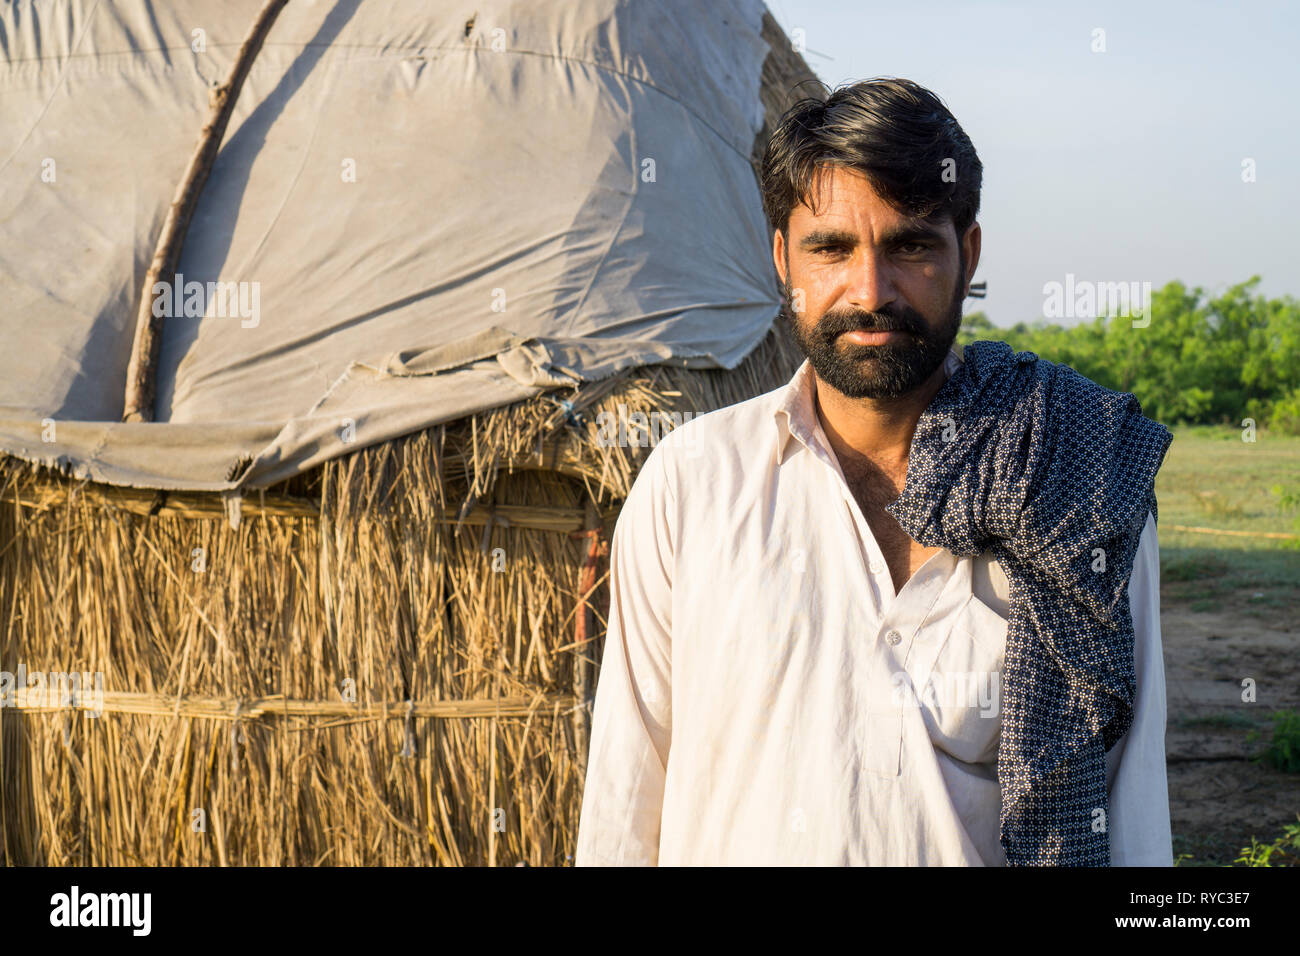 Hombre de pie pakistaníes en el exterior mirando a la cámara Foto de stock